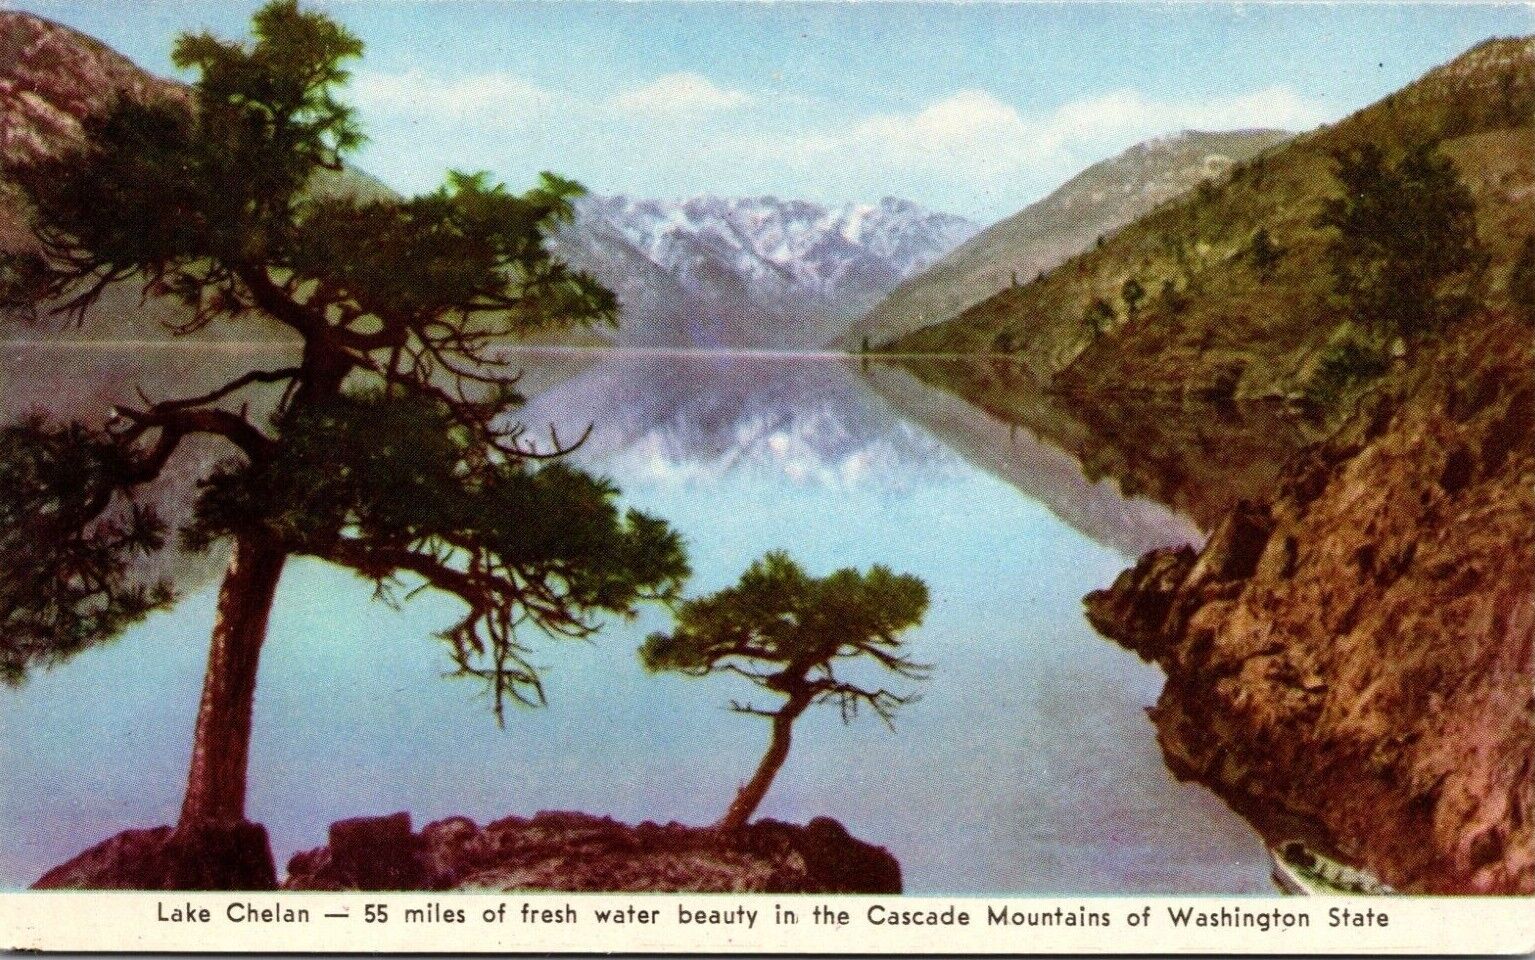 Lake Chelan in the Cascade Mountains of Washington State Tourism Postcard Vtg